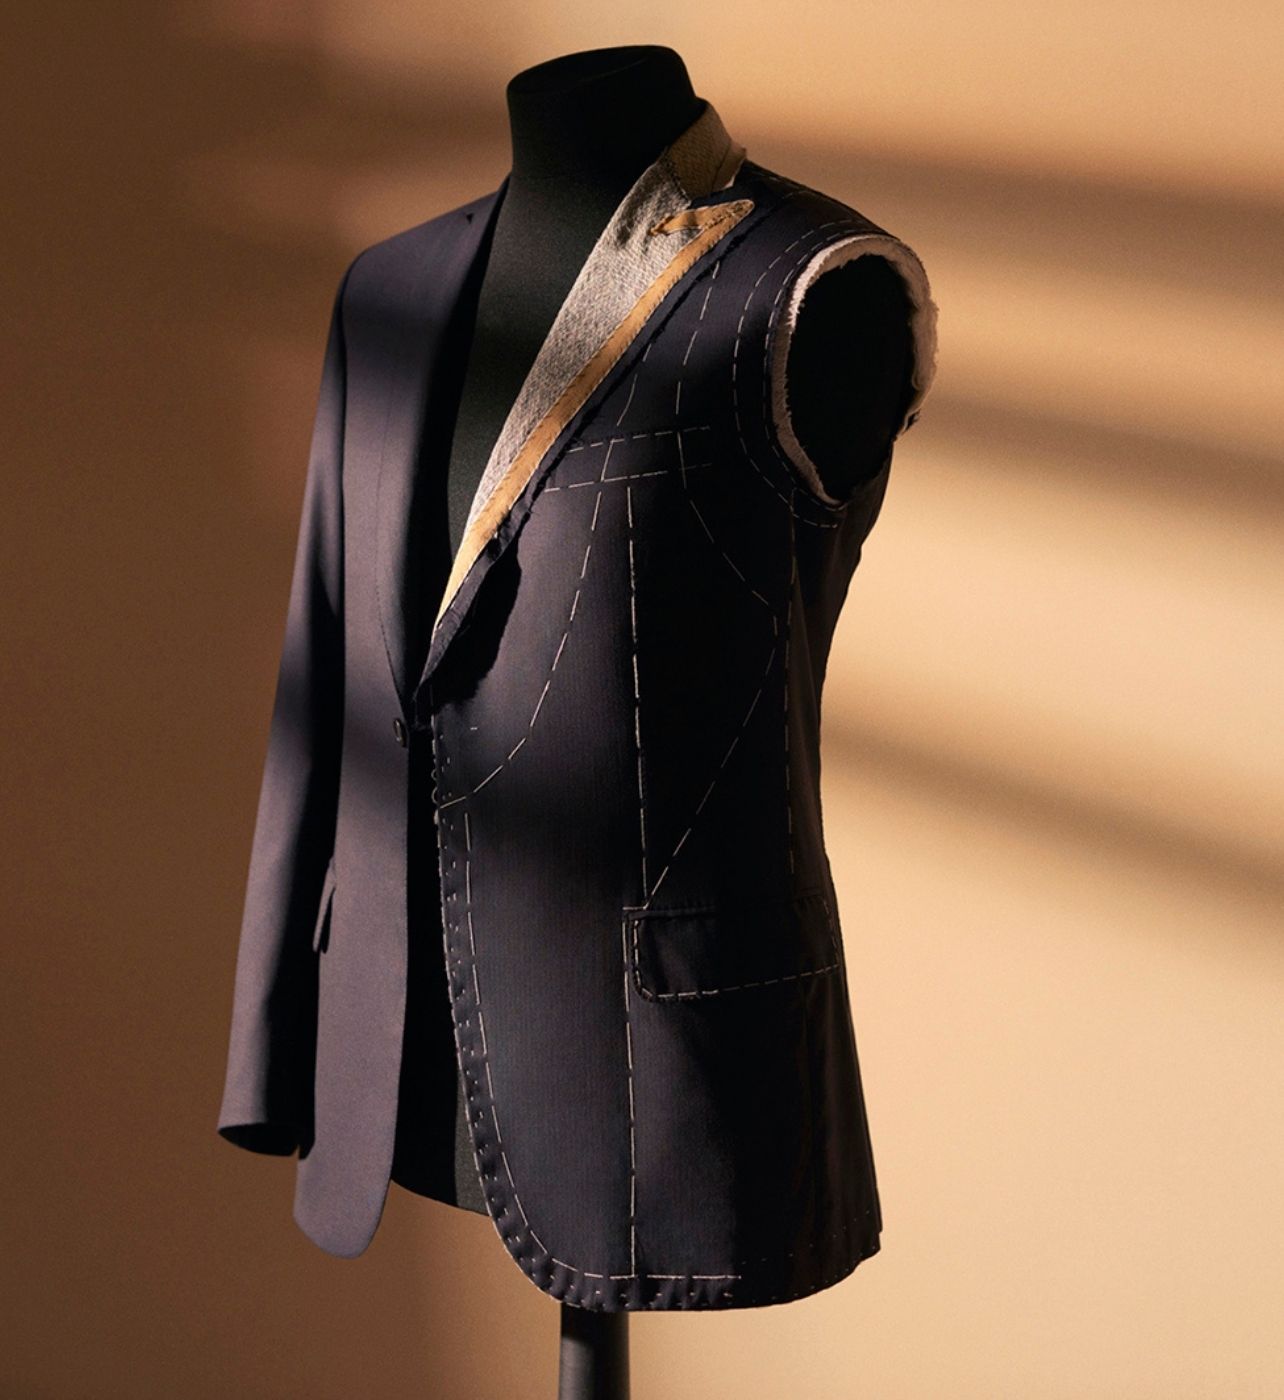 A deconstructed men’s suit hangs on a mannequin